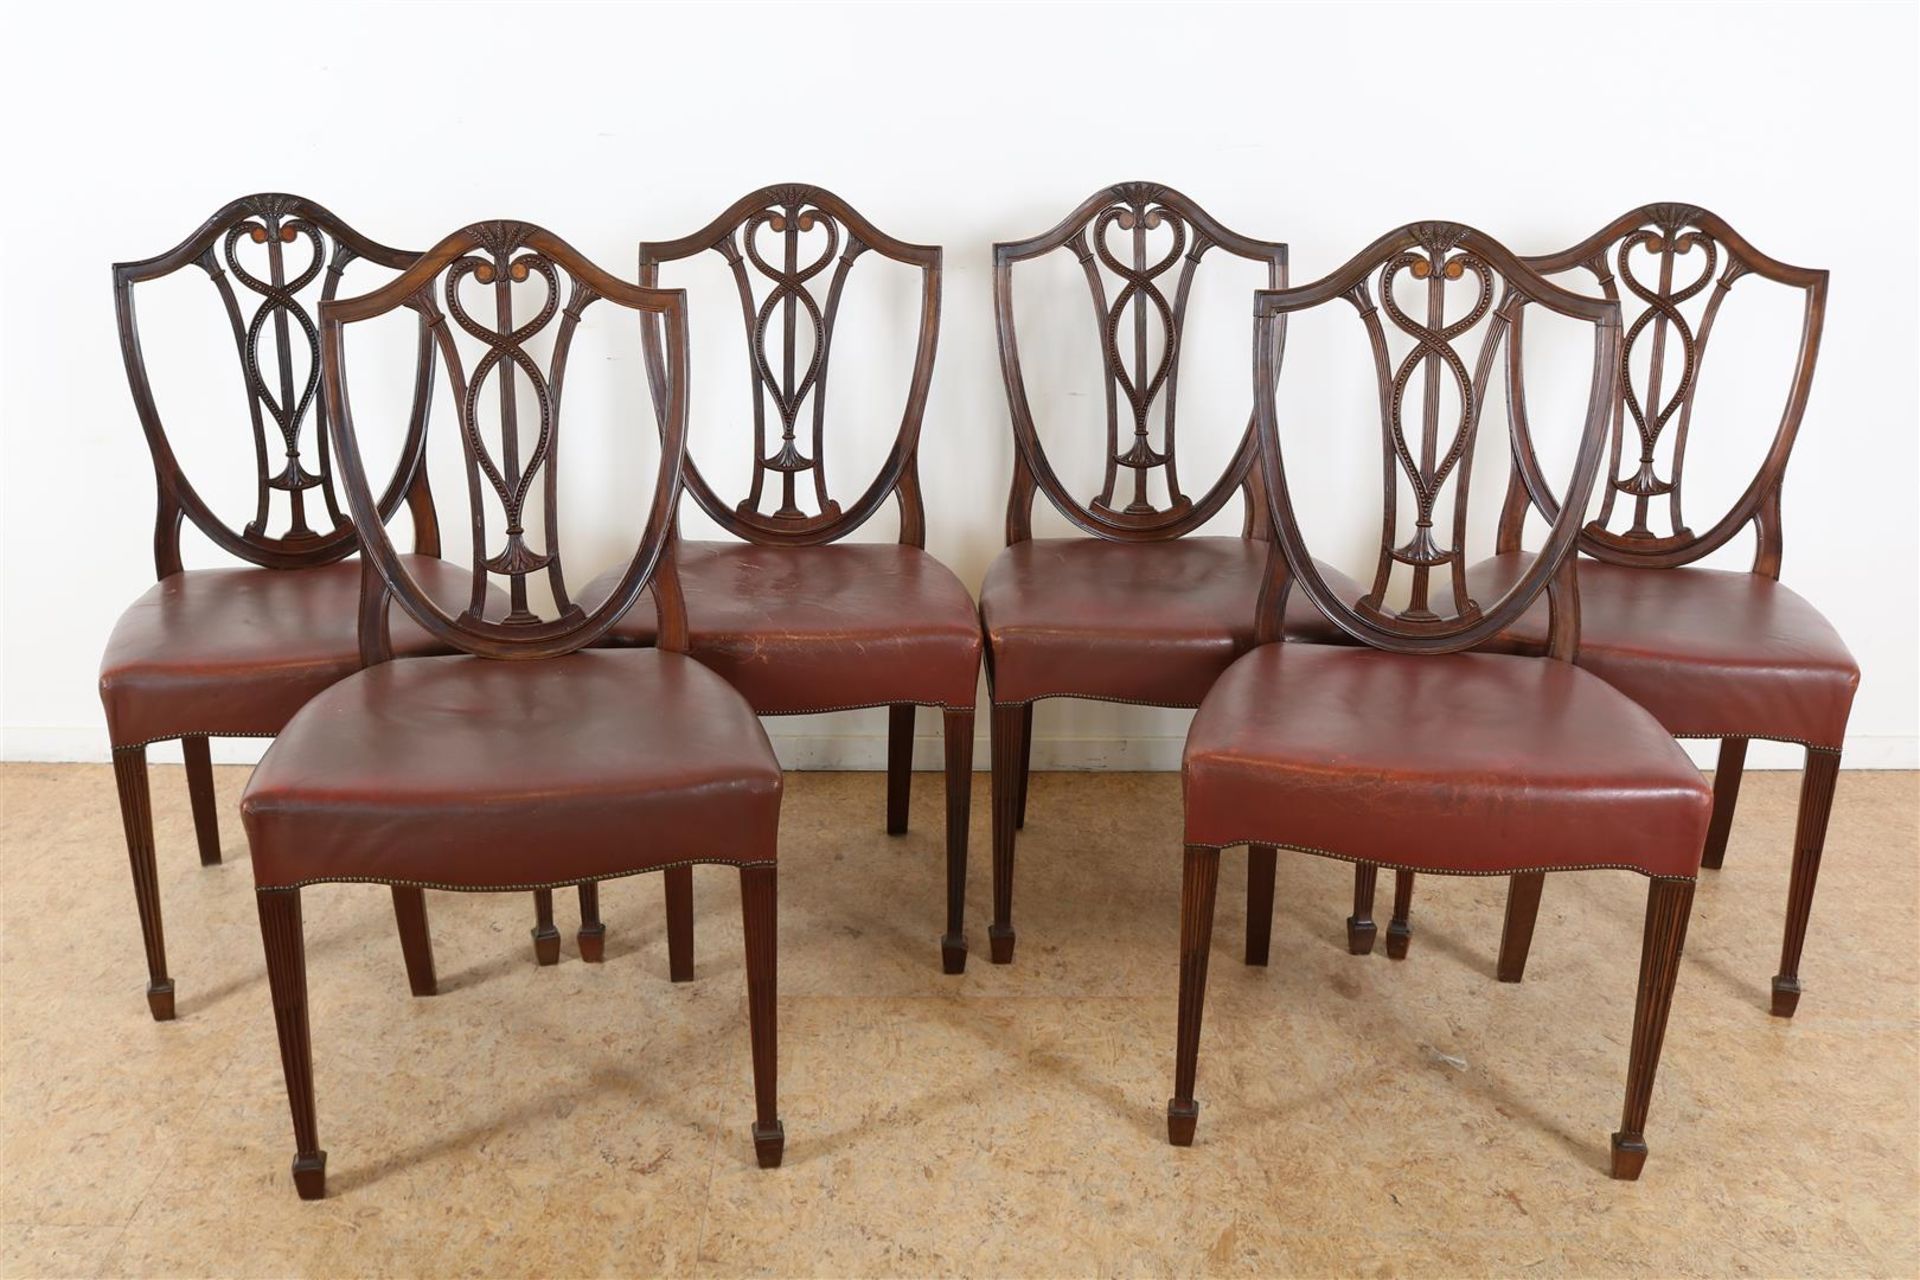 Series of 6 mahogany Hepplewhite style chairs